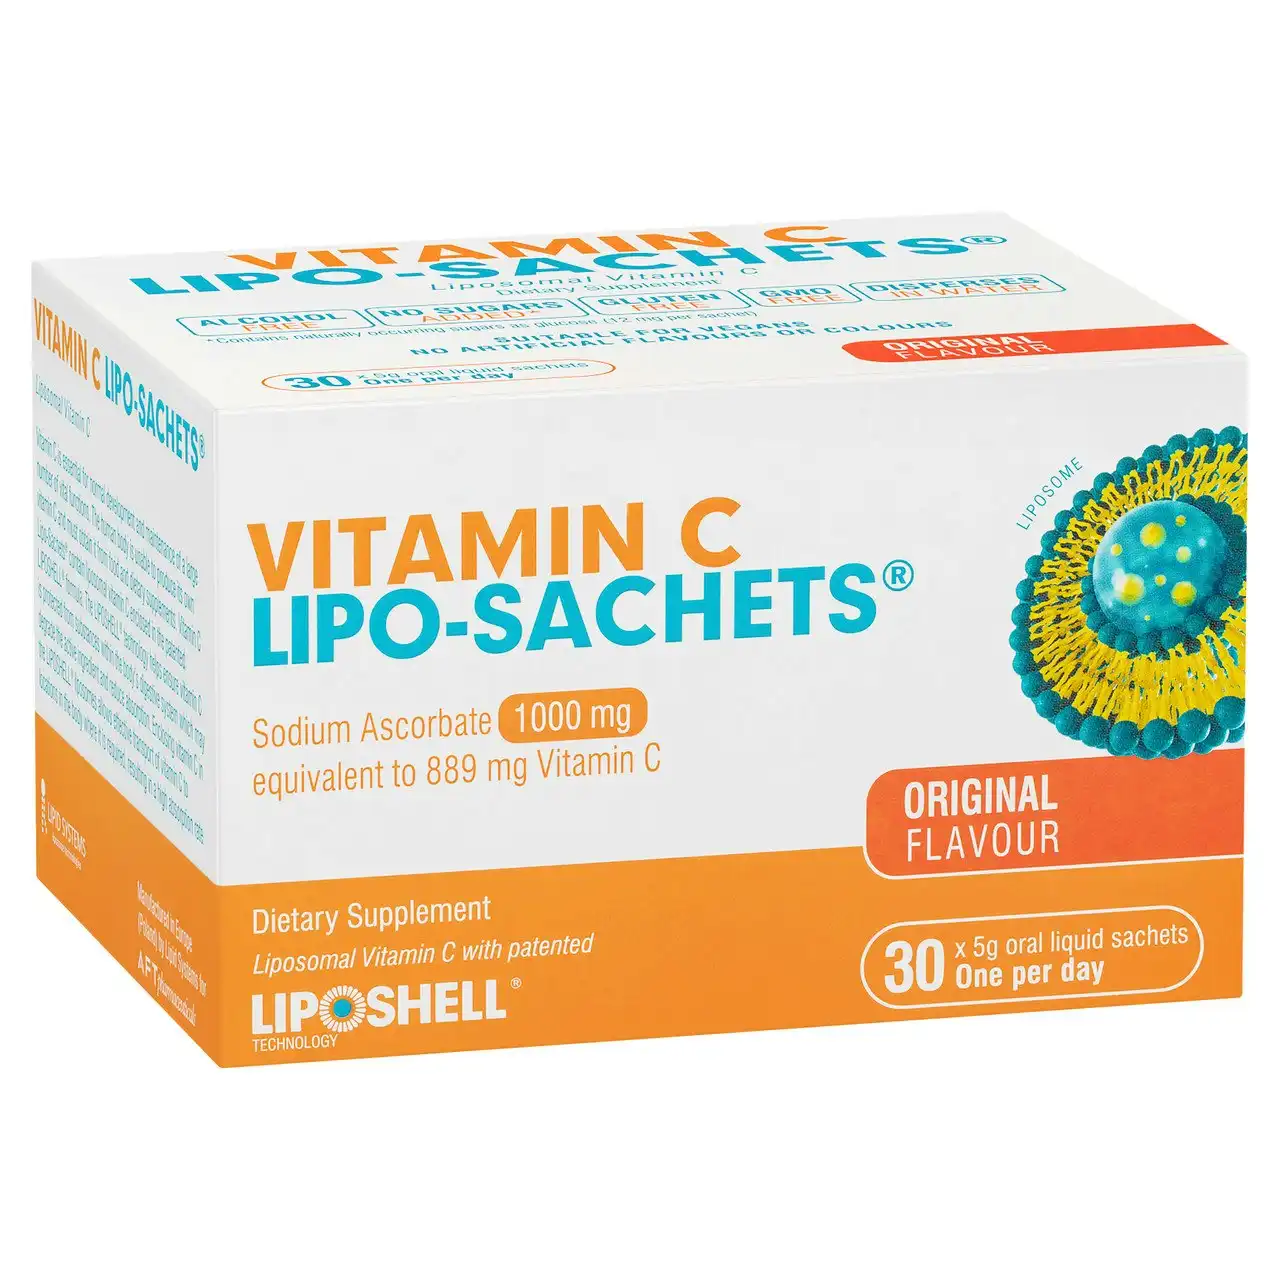 Vitamin C Lipo-Sachets(R) Original Flavour 30 Sachets x 5g